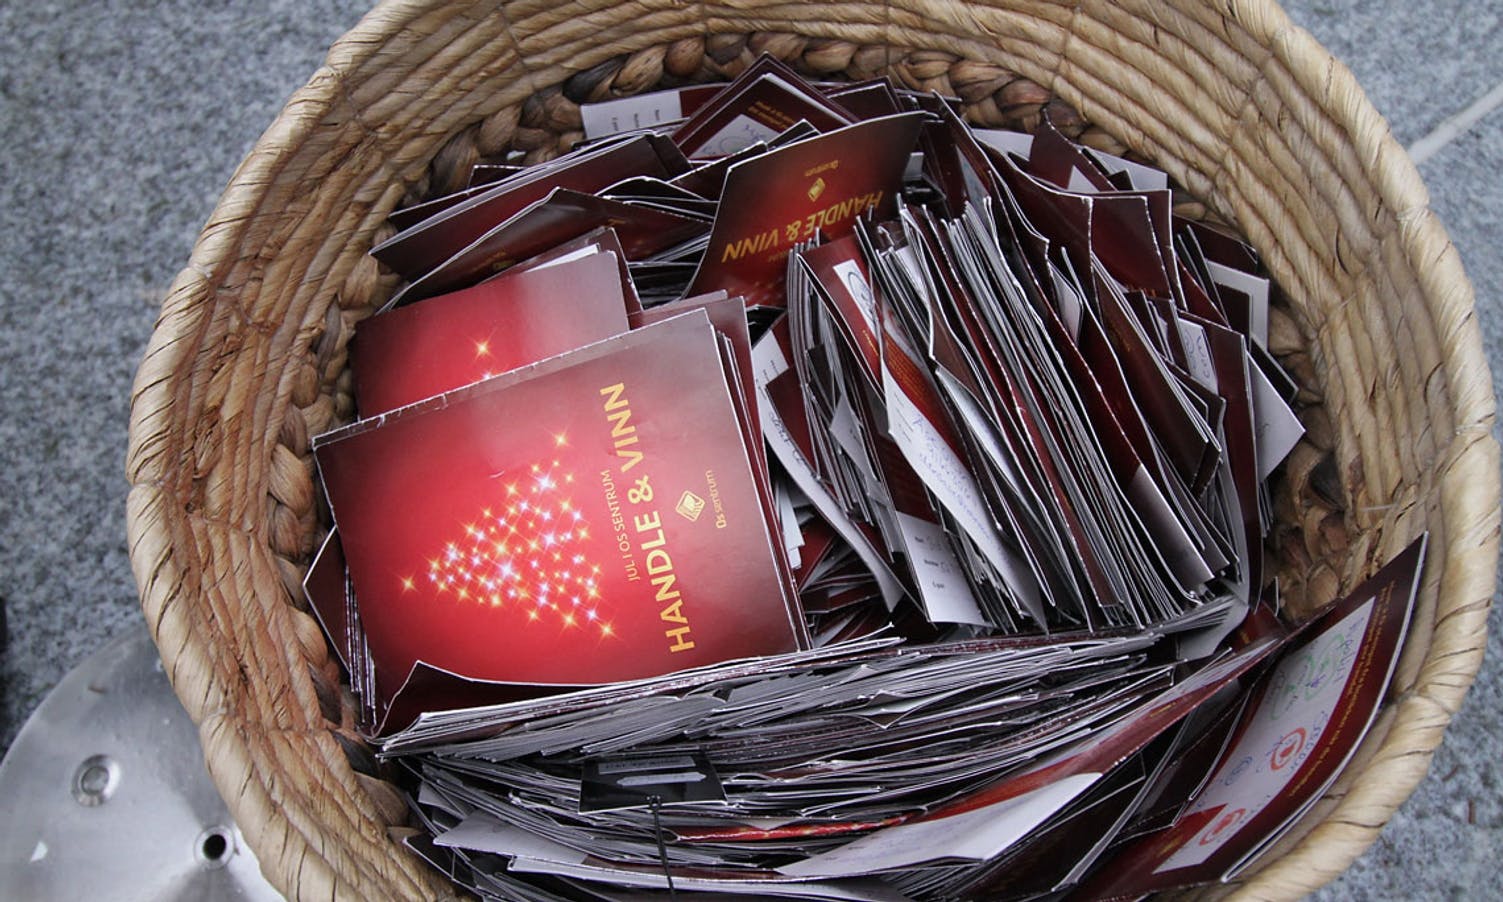 Over 3000 storkundar har levert kort til trekninga. (Foto: Kjetil Vasby Bruarøy)